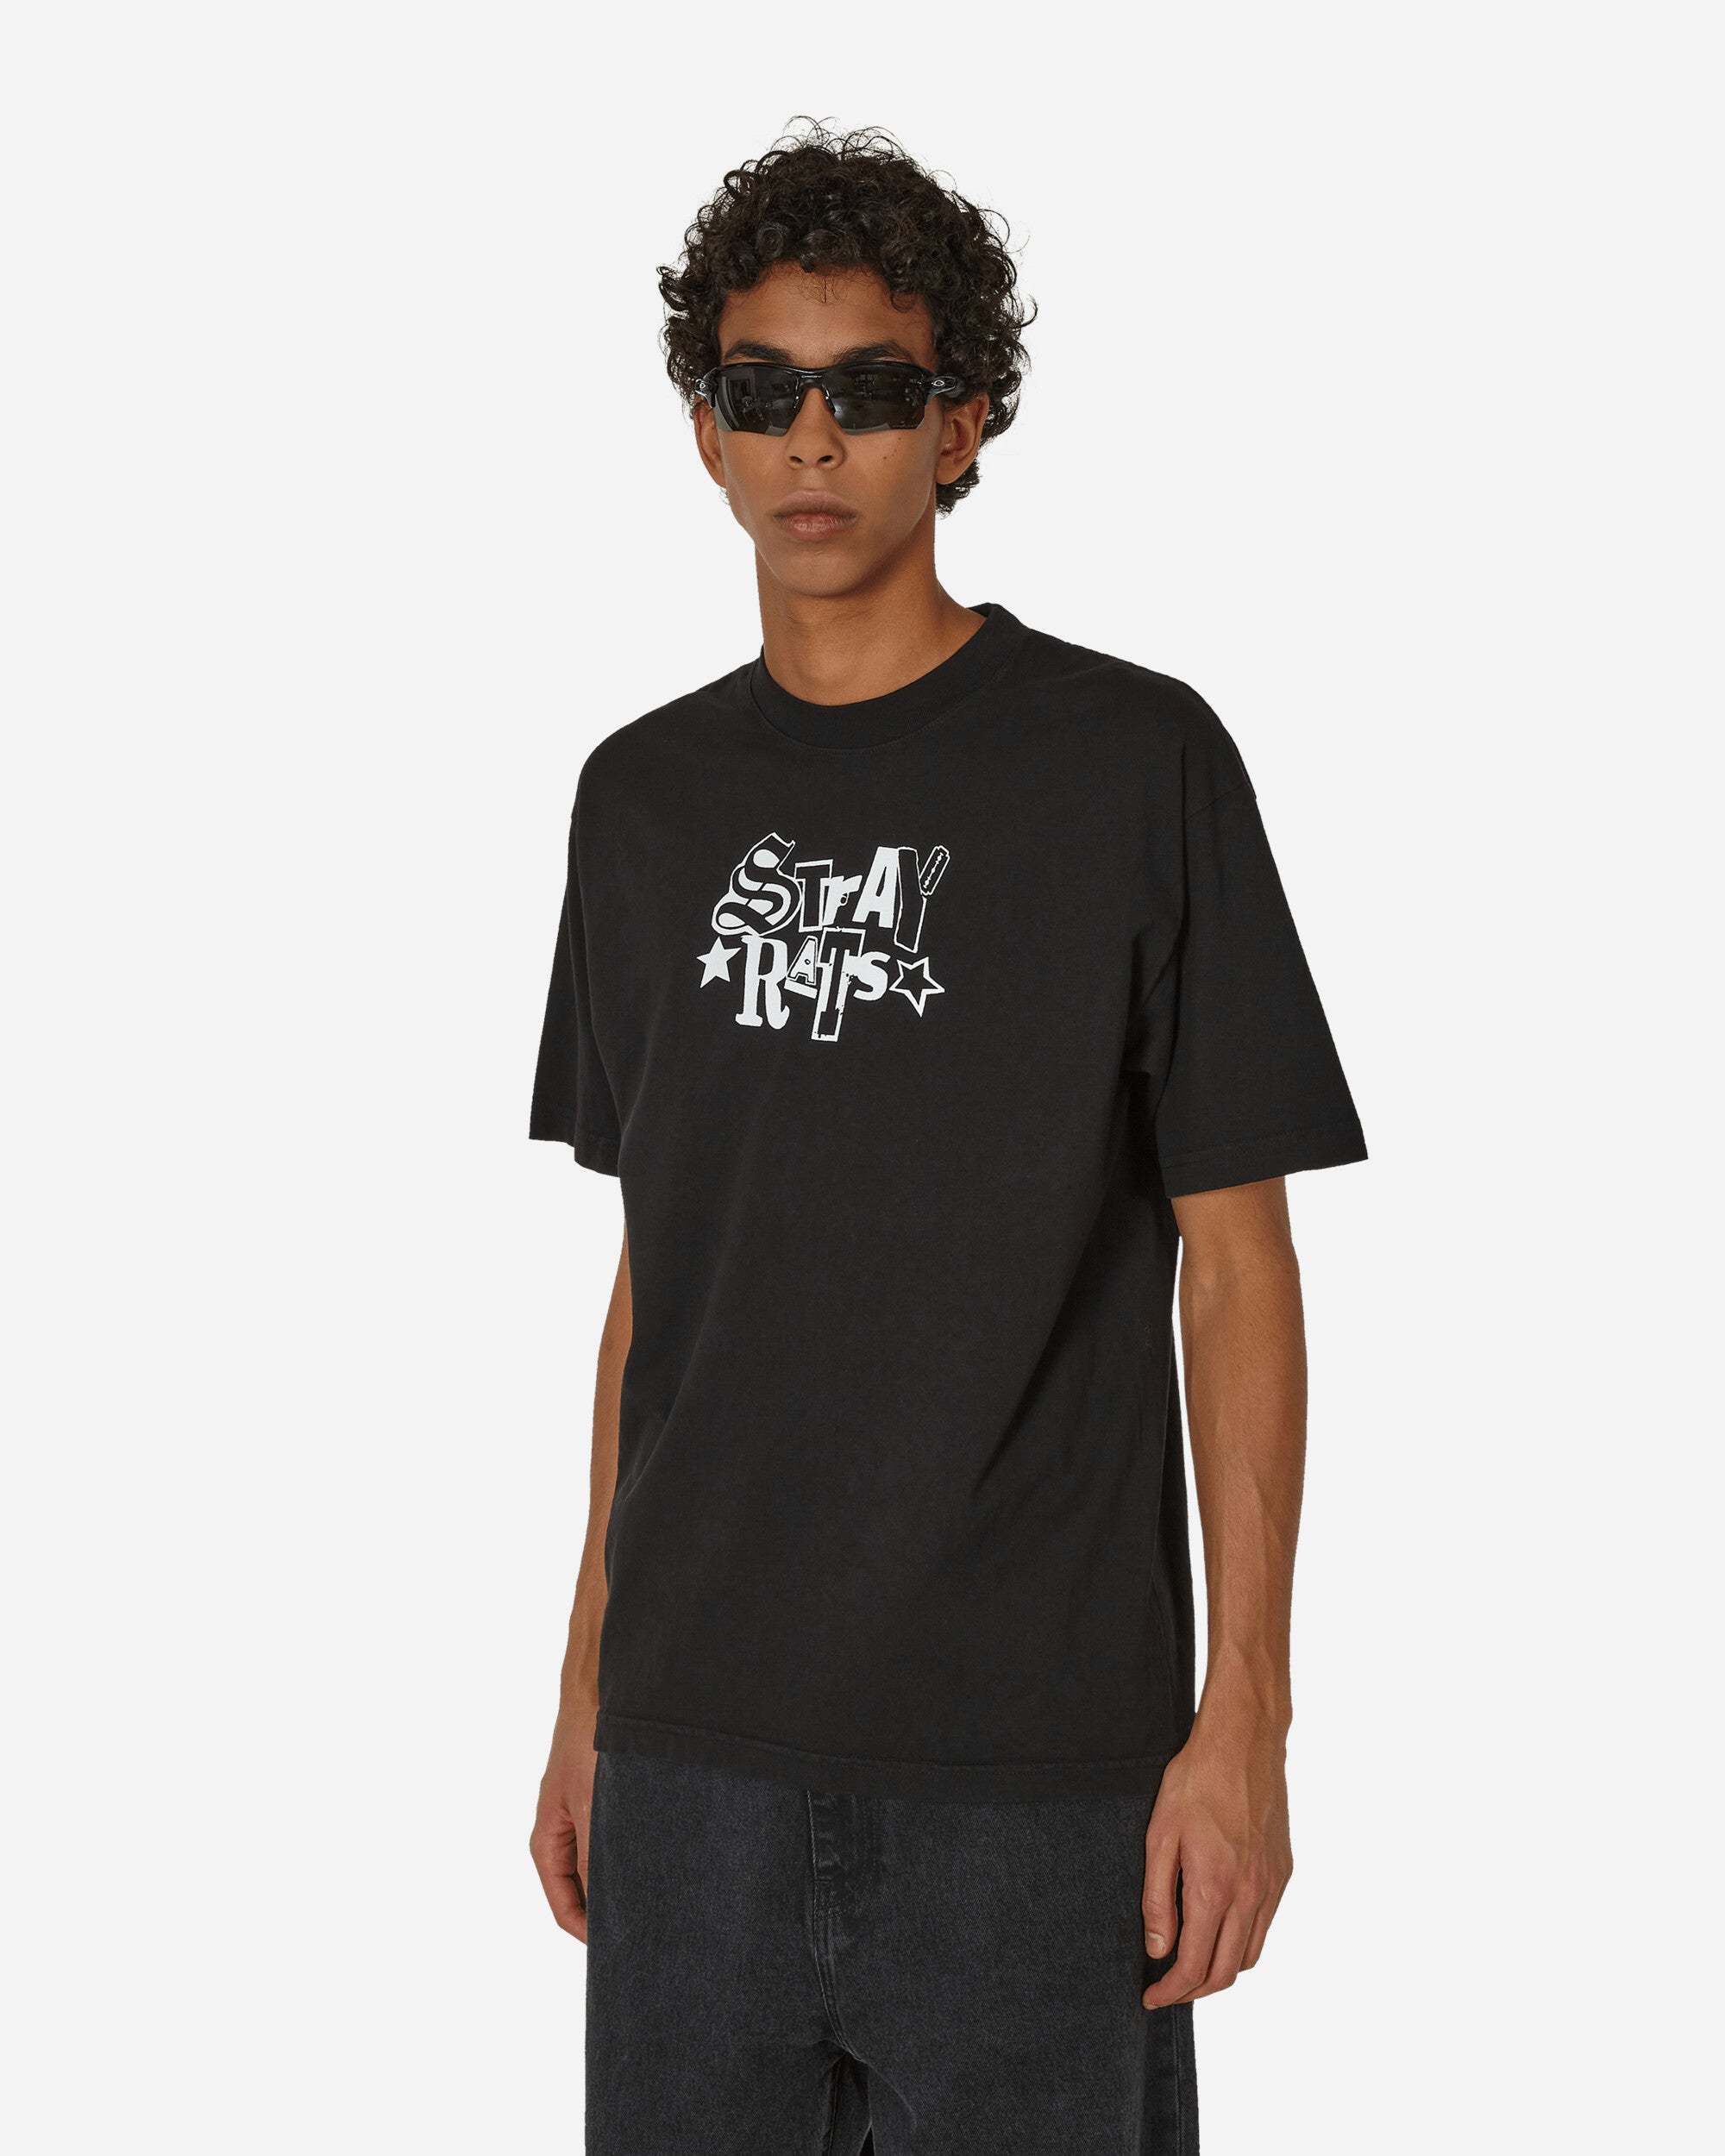 新品 Stray Rats Tee T-shirts Tシャツ XLConsConve